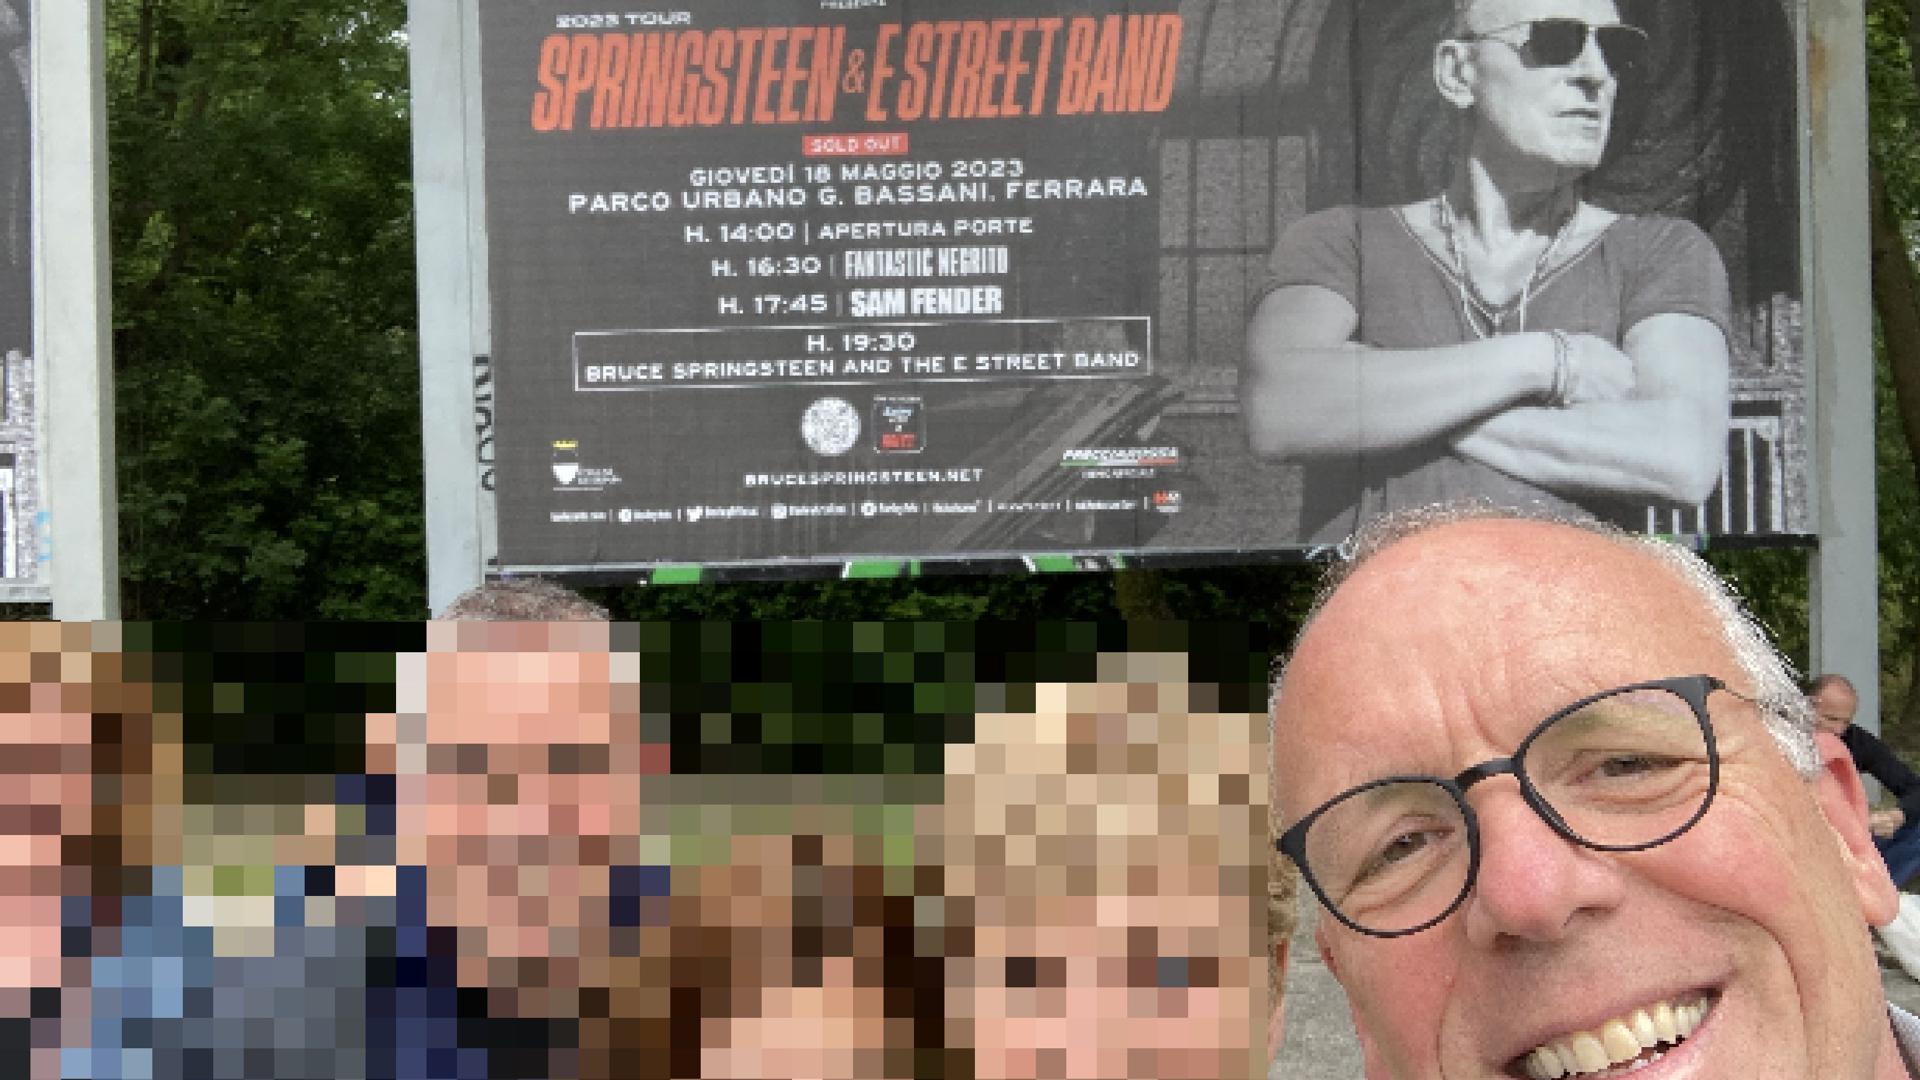 Menschen vor einem Plakat zum Springsteen-Konzert in Ferrara